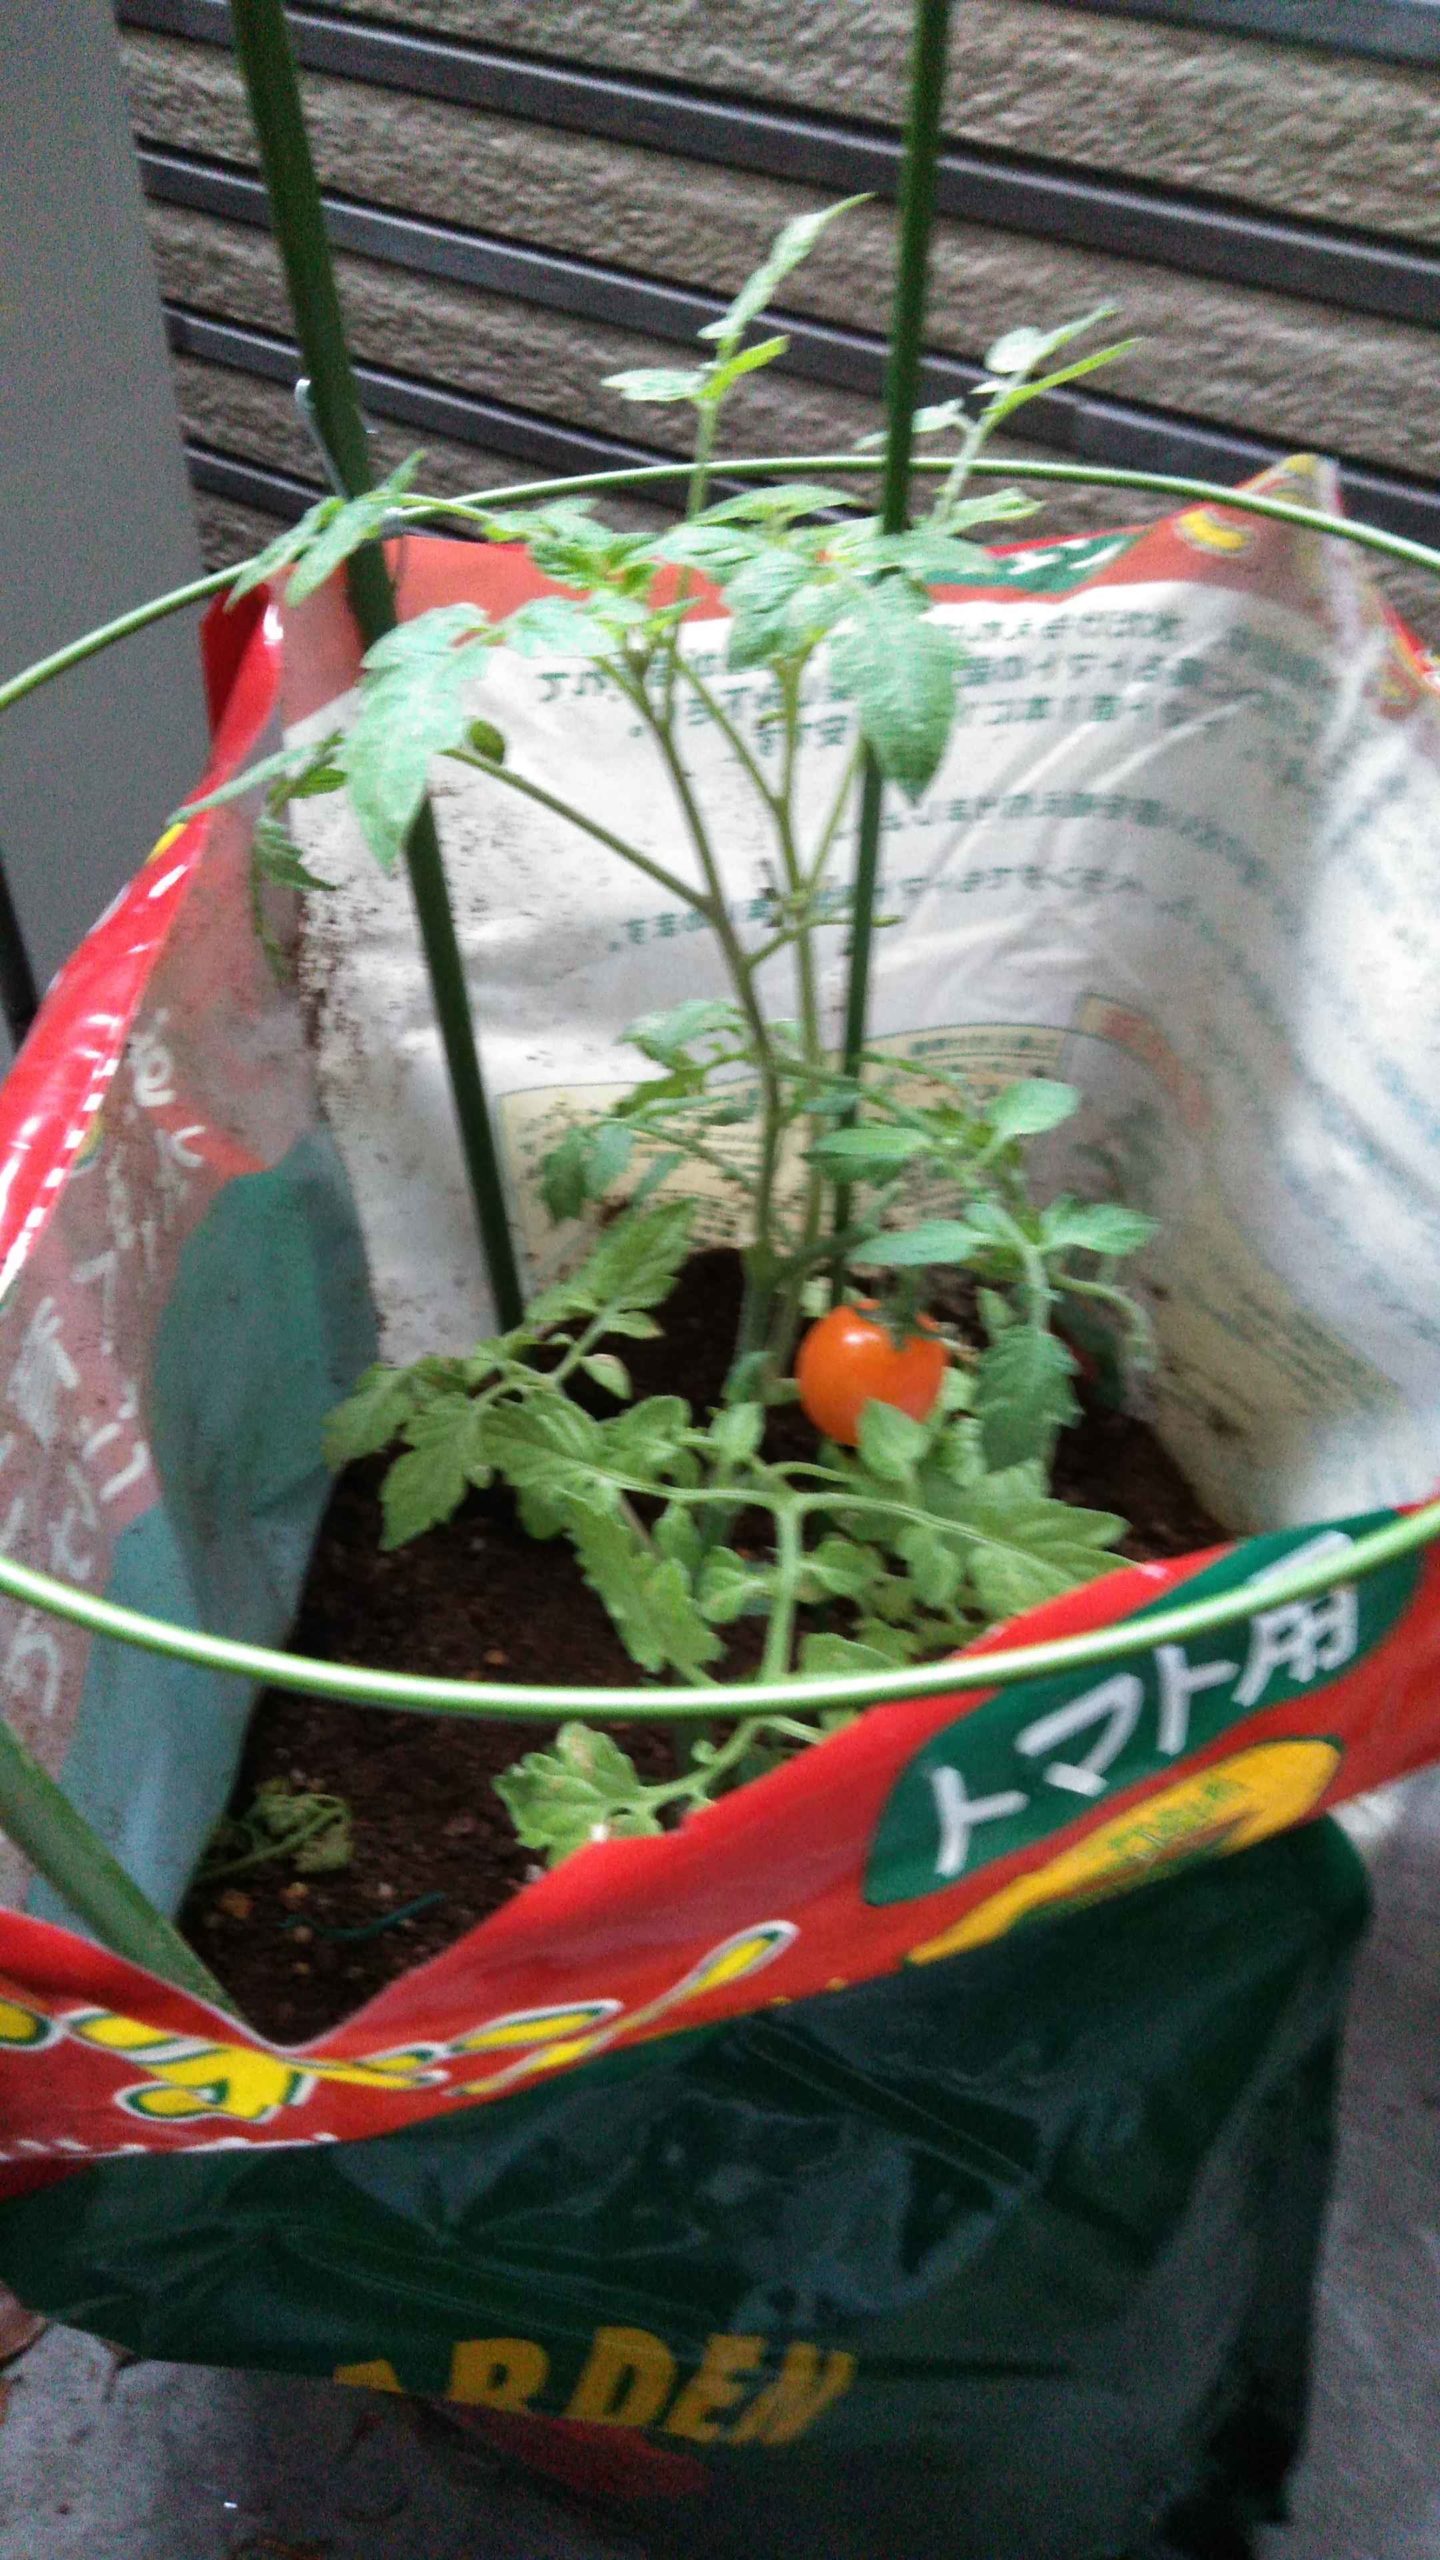 ミニトマト 栽培 初心者の手入れ注意点 水やり わき芽 摘芯 お気楽に